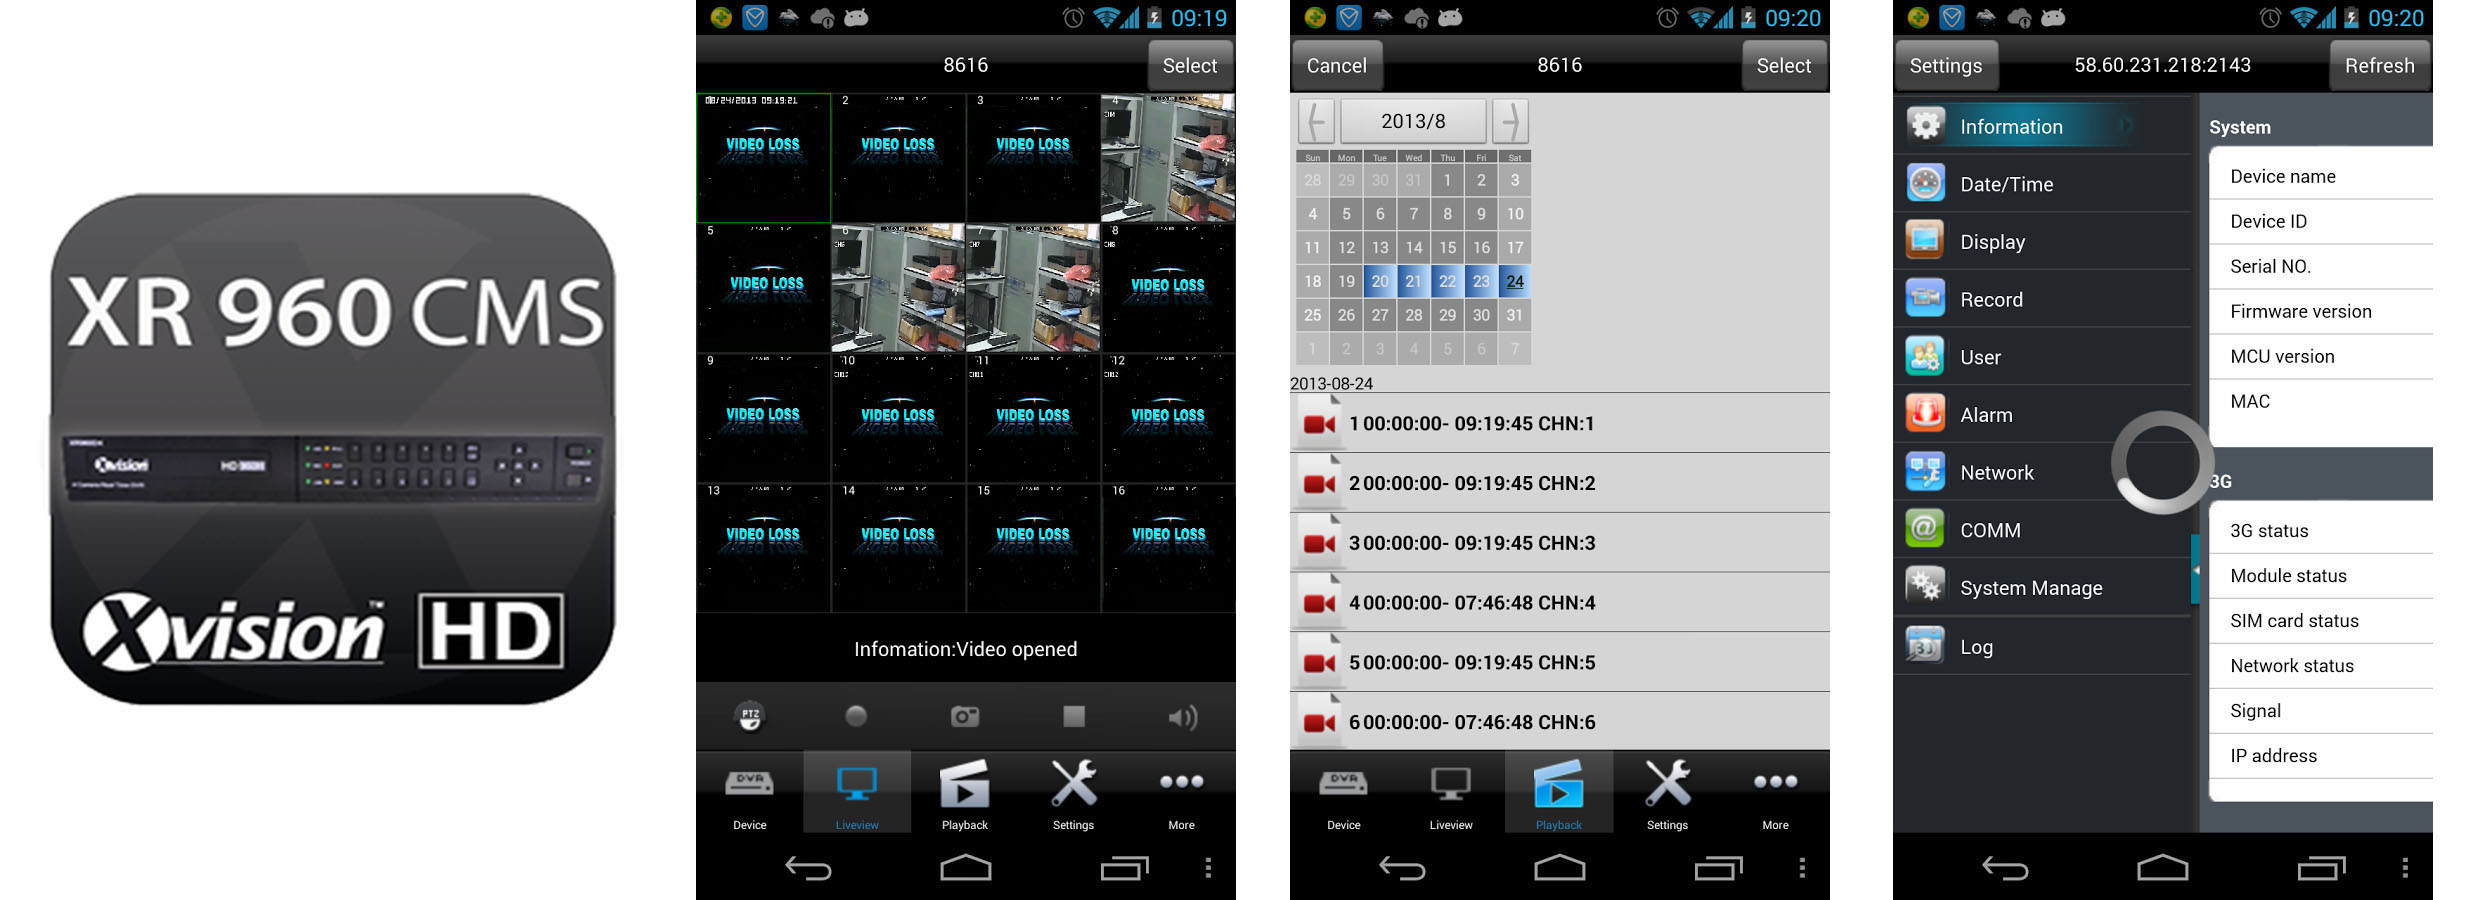 Aplikace XR 960 CMS pro mobily